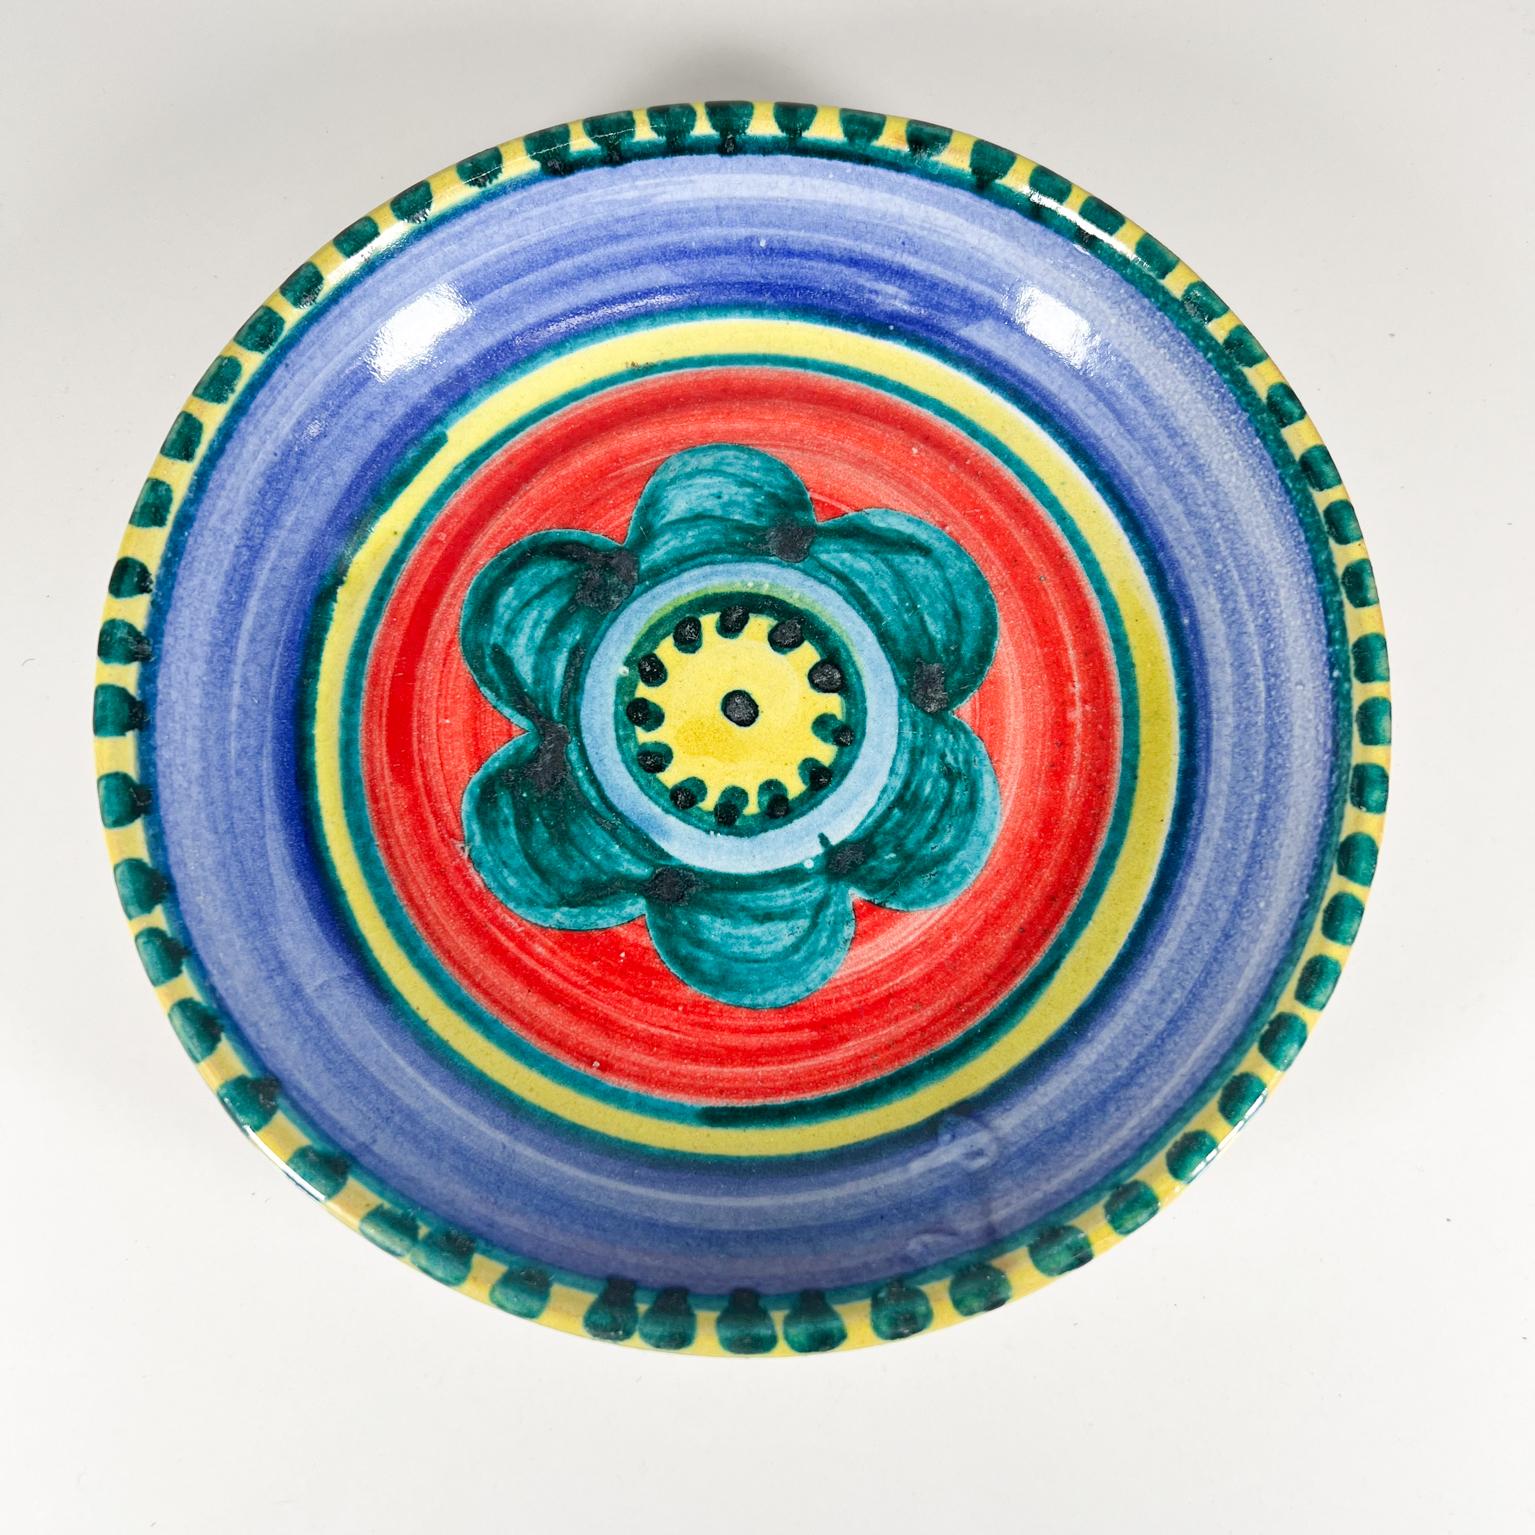 1960s DeSimone Pottery of Italy Colorful Ceramic Art Hand Painted Soup Bowl Plate 
Giovanni Desimone Italie
8,5 de diamètre x 1,63 de hauteur 
Inscription : DESIMONE
État vintage d'origine.
Reportez-vous aux images.
Nous en avons d'autres !